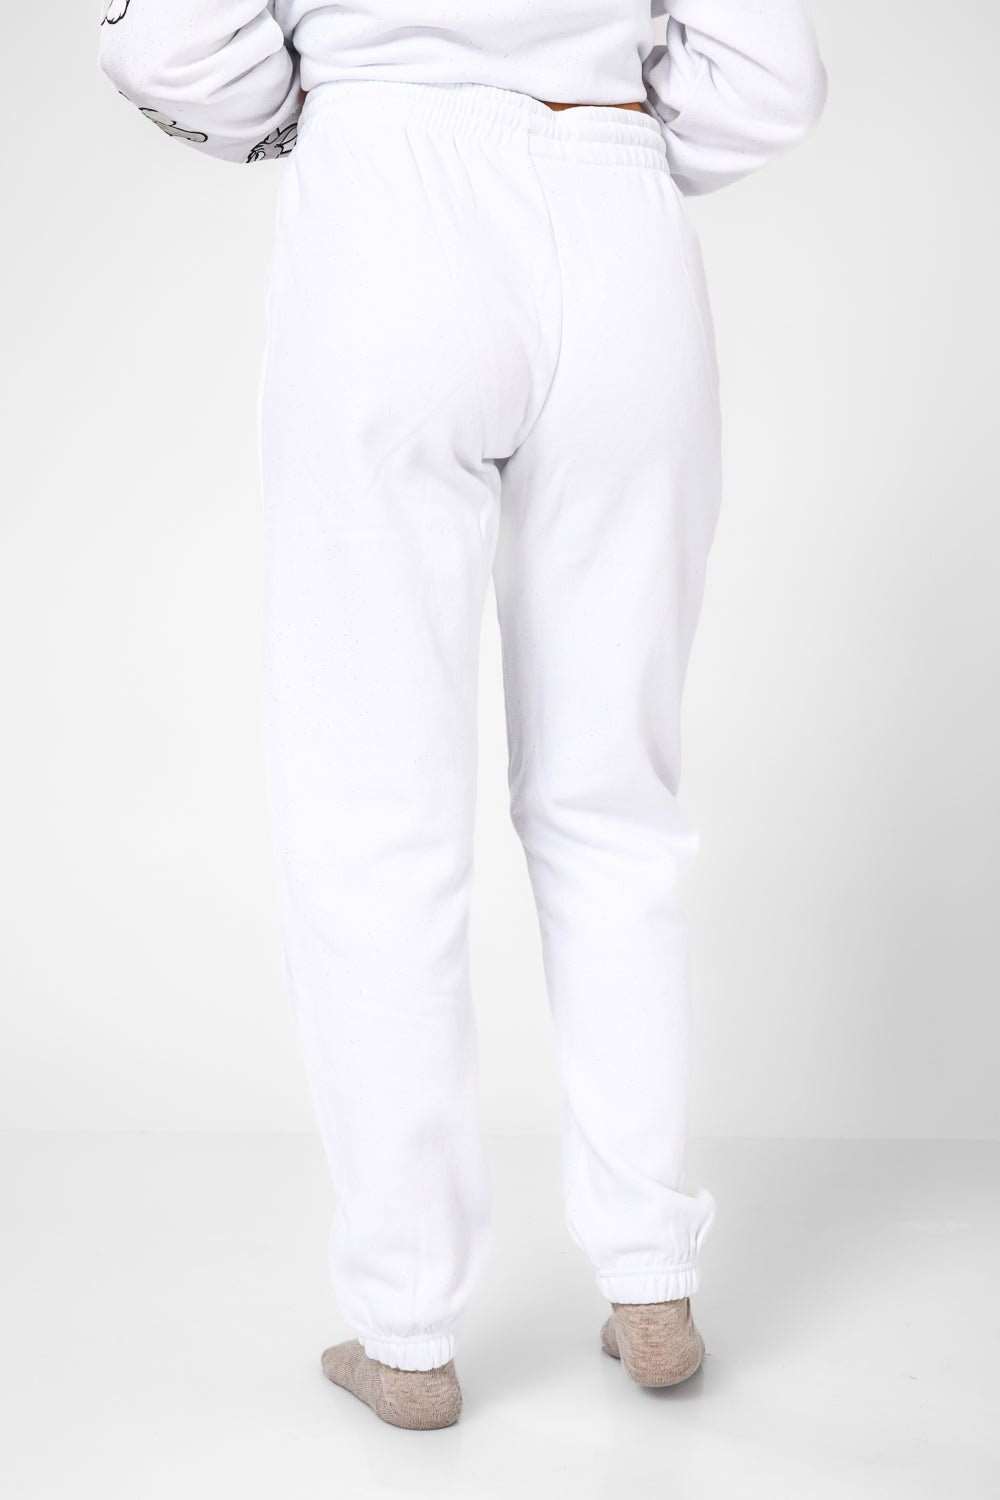 DELTA - סט פיג'מה פוטר מיקי בצבע לבן - MASHBIR//365